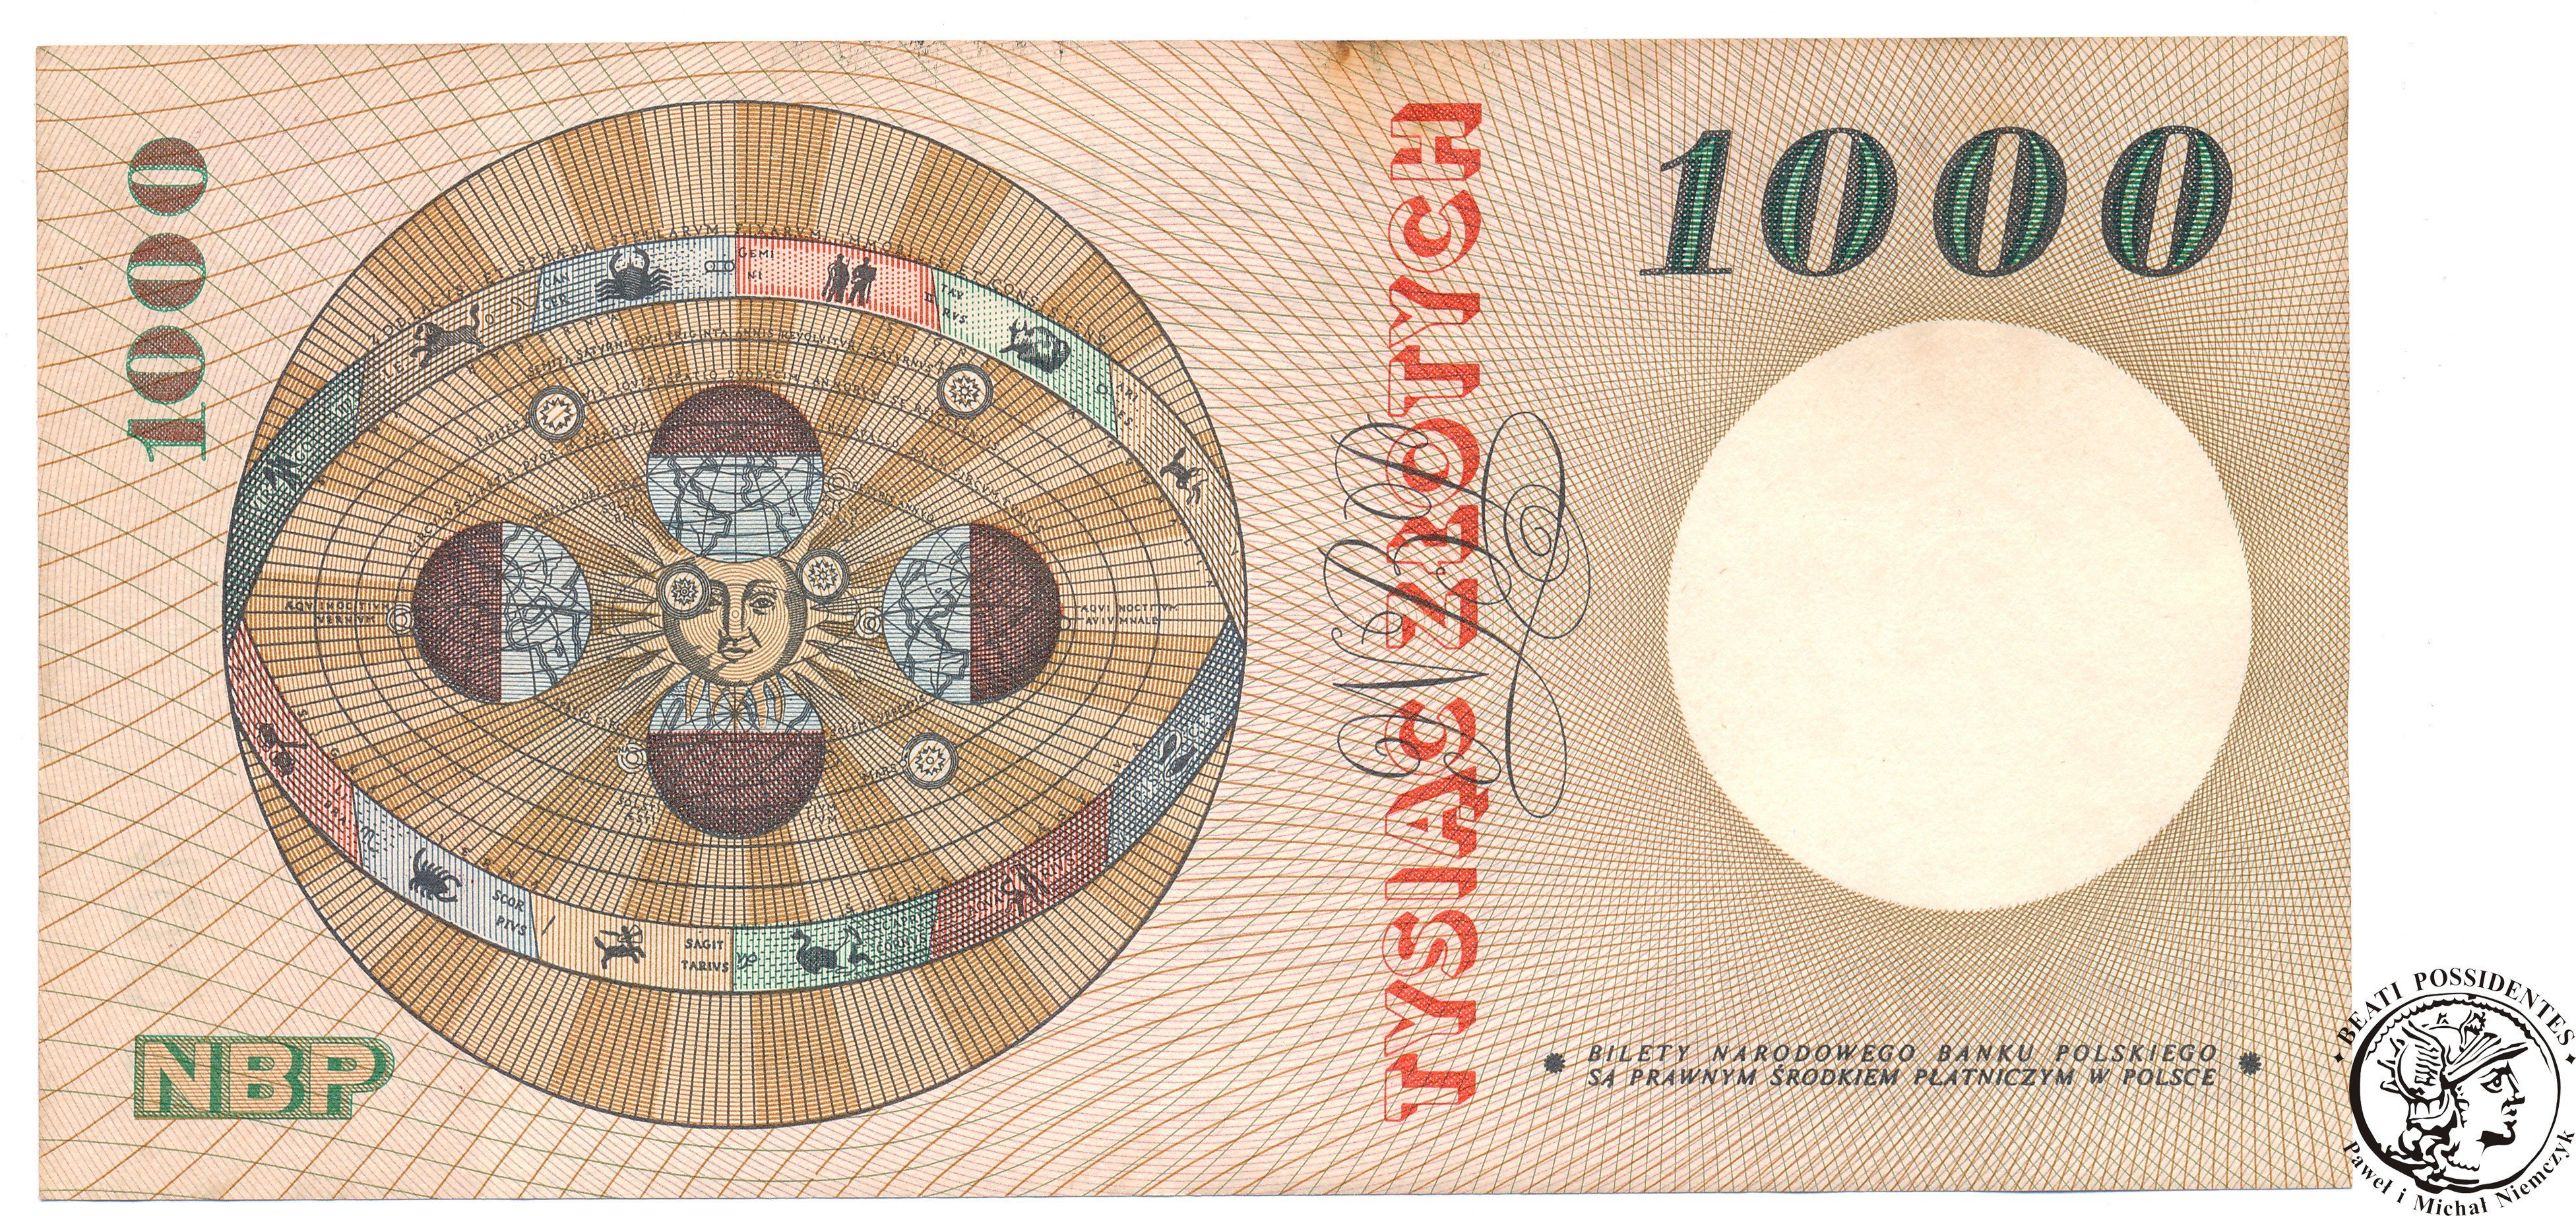 Banknot 1000 złotych 1965 Kopernik seria F 